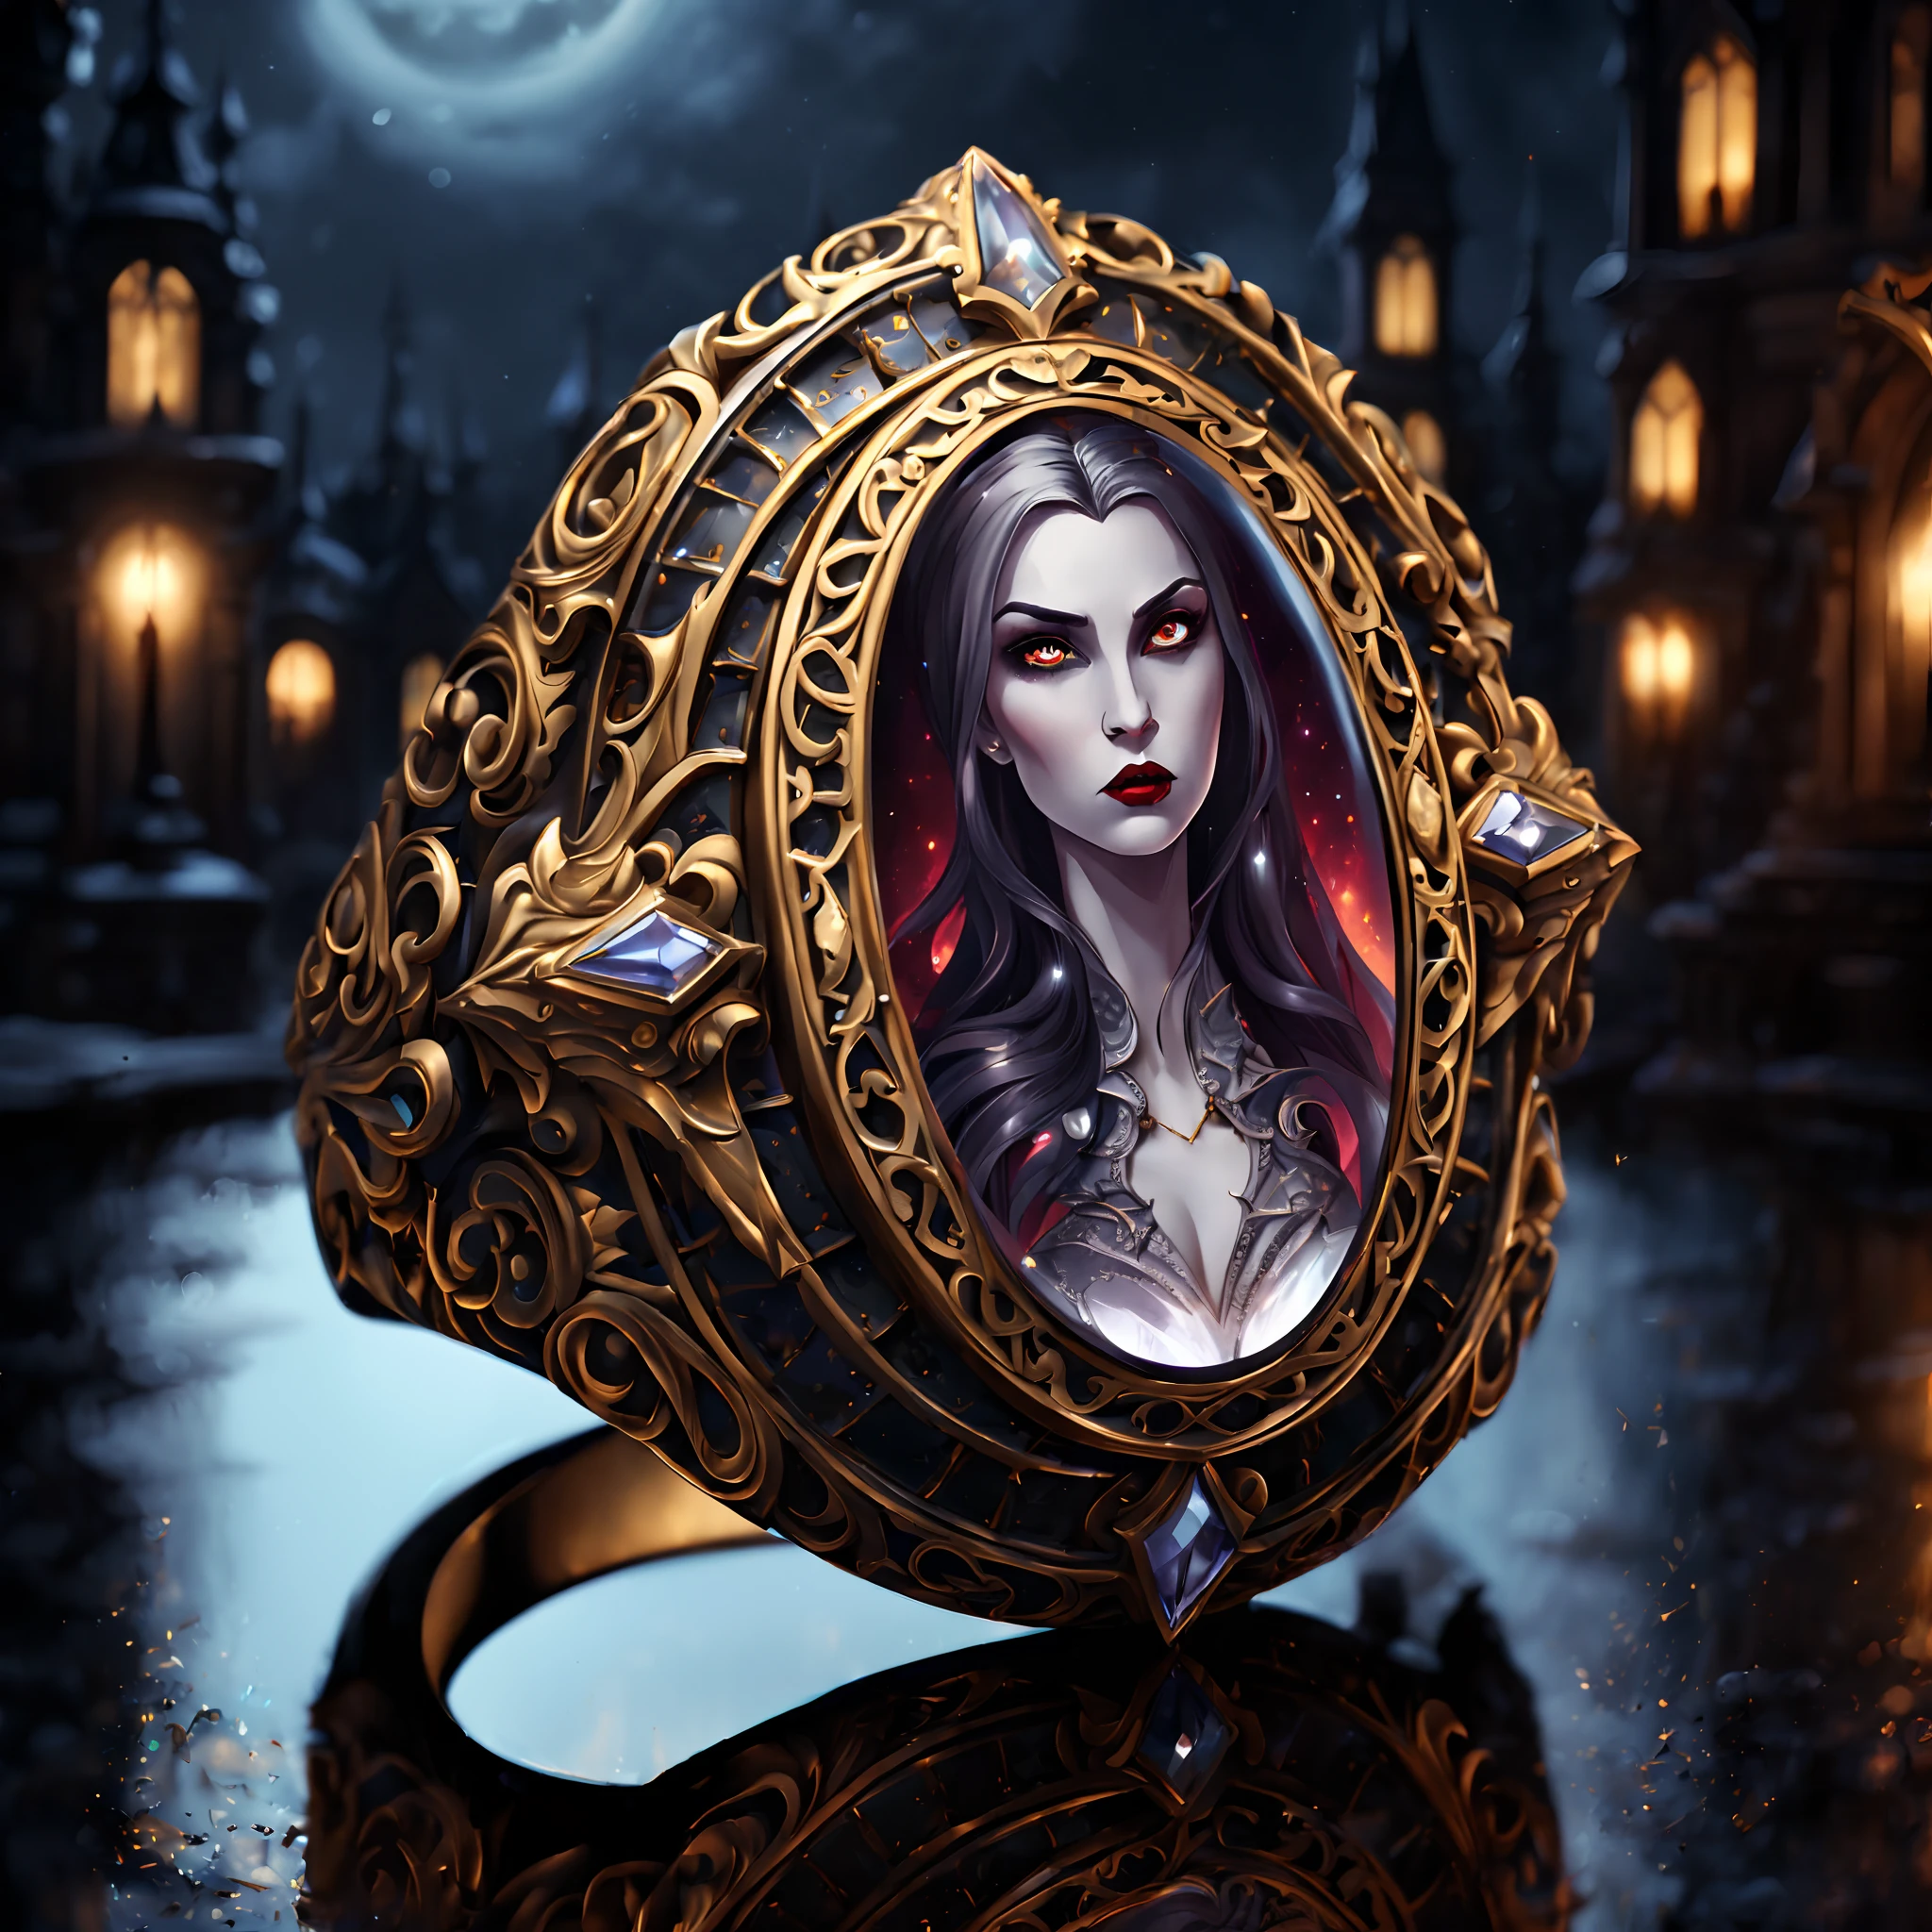 (episches Cartoon-Gemälde), (majestätischer Ring:1.3) (mit aufwendigen Gravuren der Vampirkönigin darauf:1.3), reich verzierte Muster, (metallische Reflexion:1.2), (gotischer Nachthintergrund:1.4)